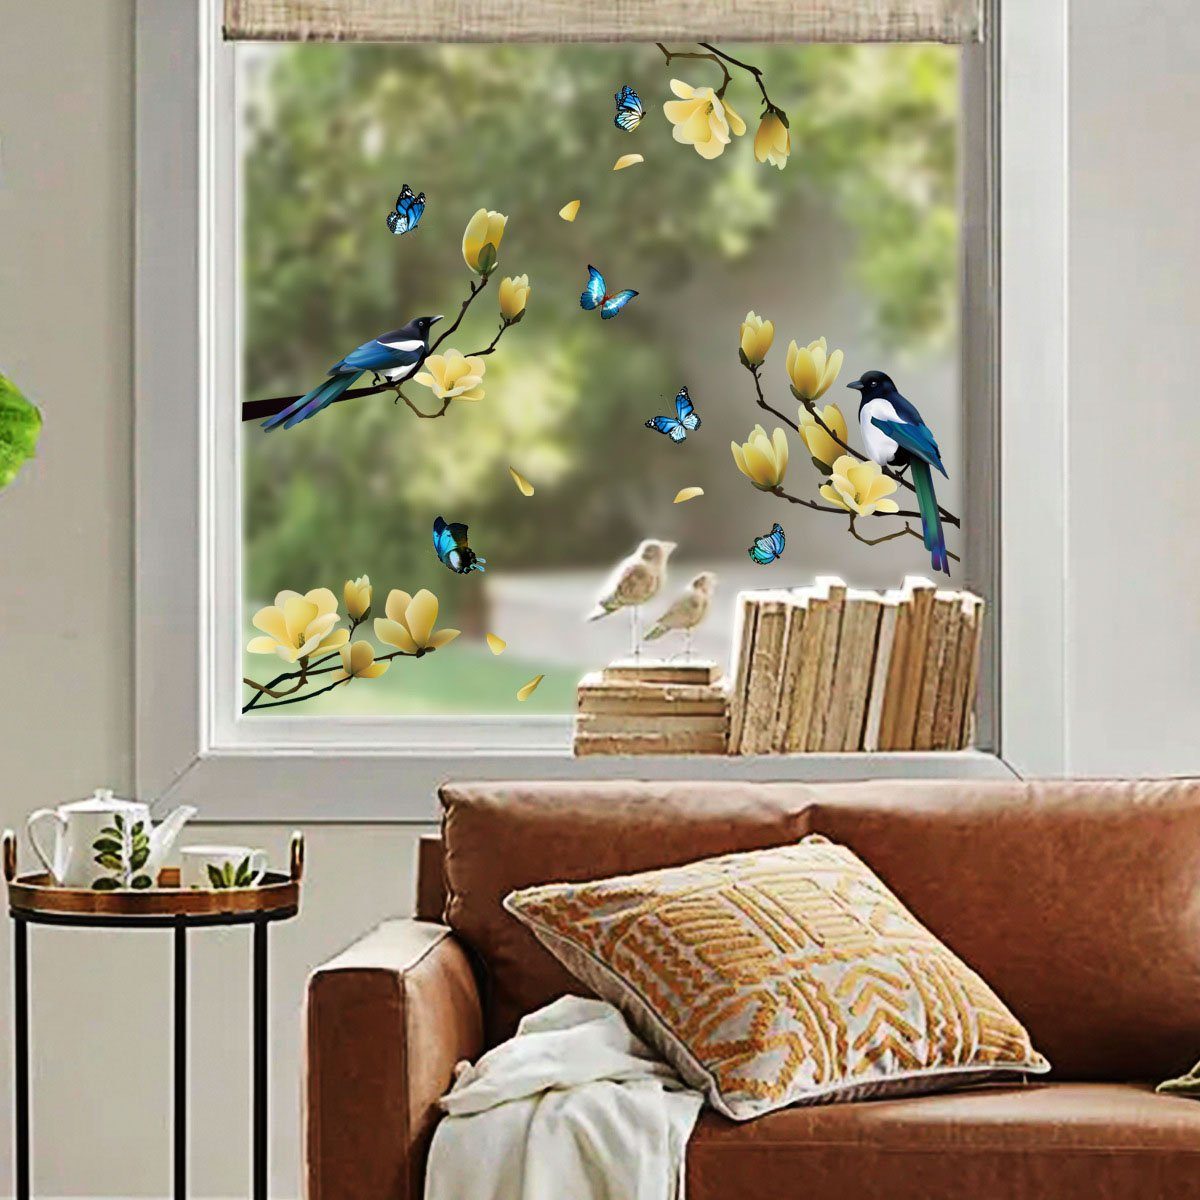 Juoungle Fensterbild 2 set Statische Fensteraufkleber,Frühlingsblume,Vogel,Schmetterling